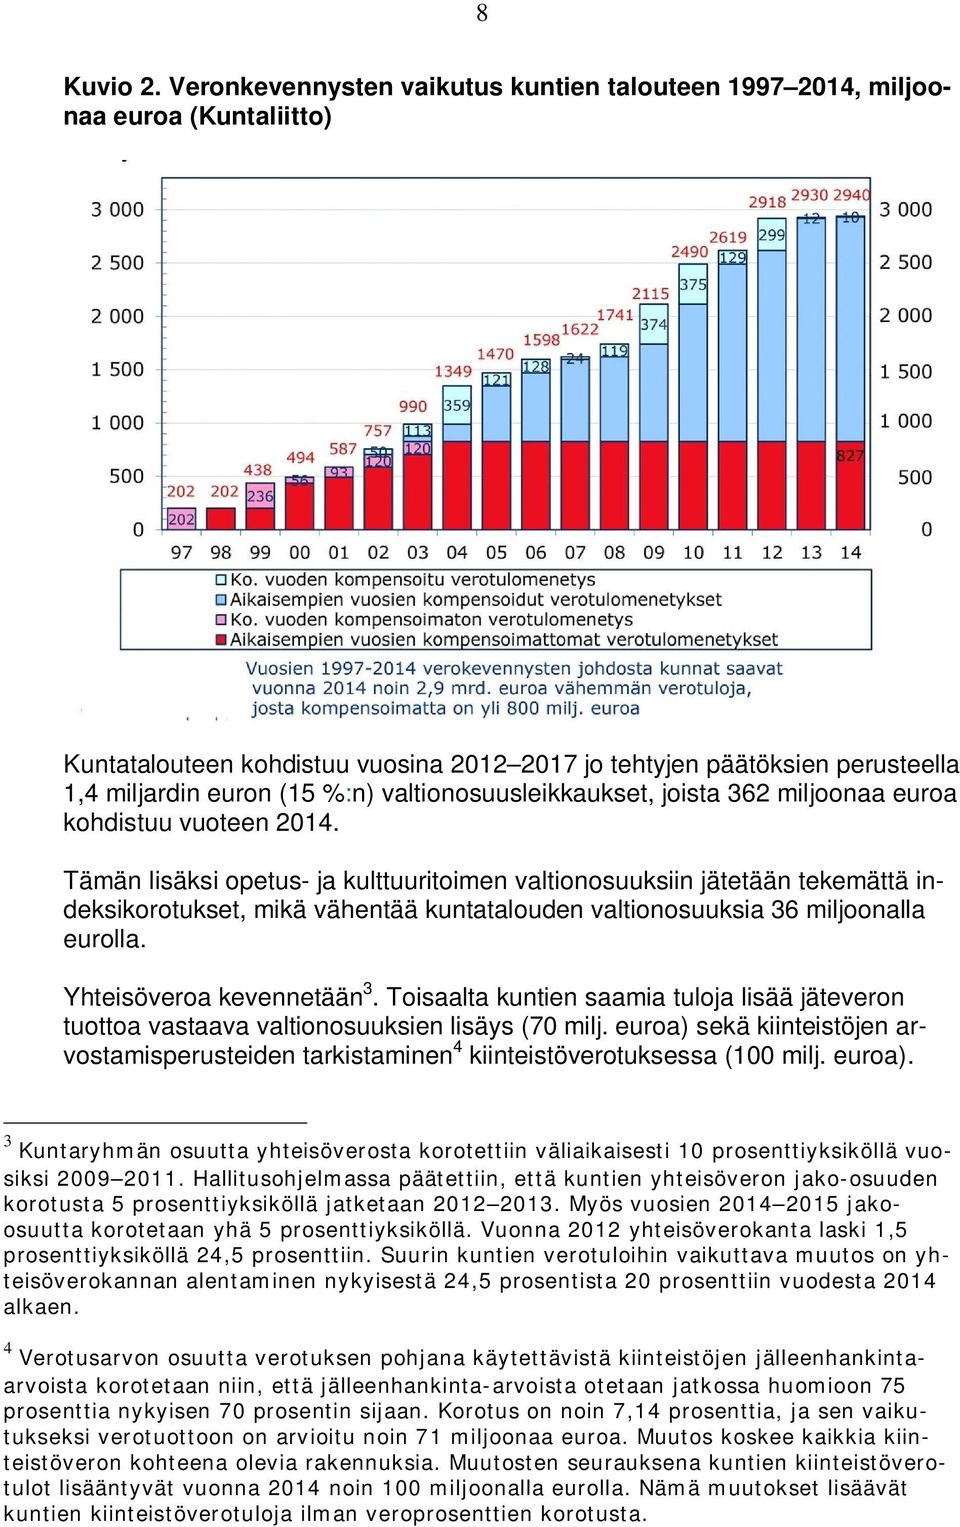 valtionosuusleikkaukset, joista 362 miljoonaa euroa kohdistuu vuoteen 2014.